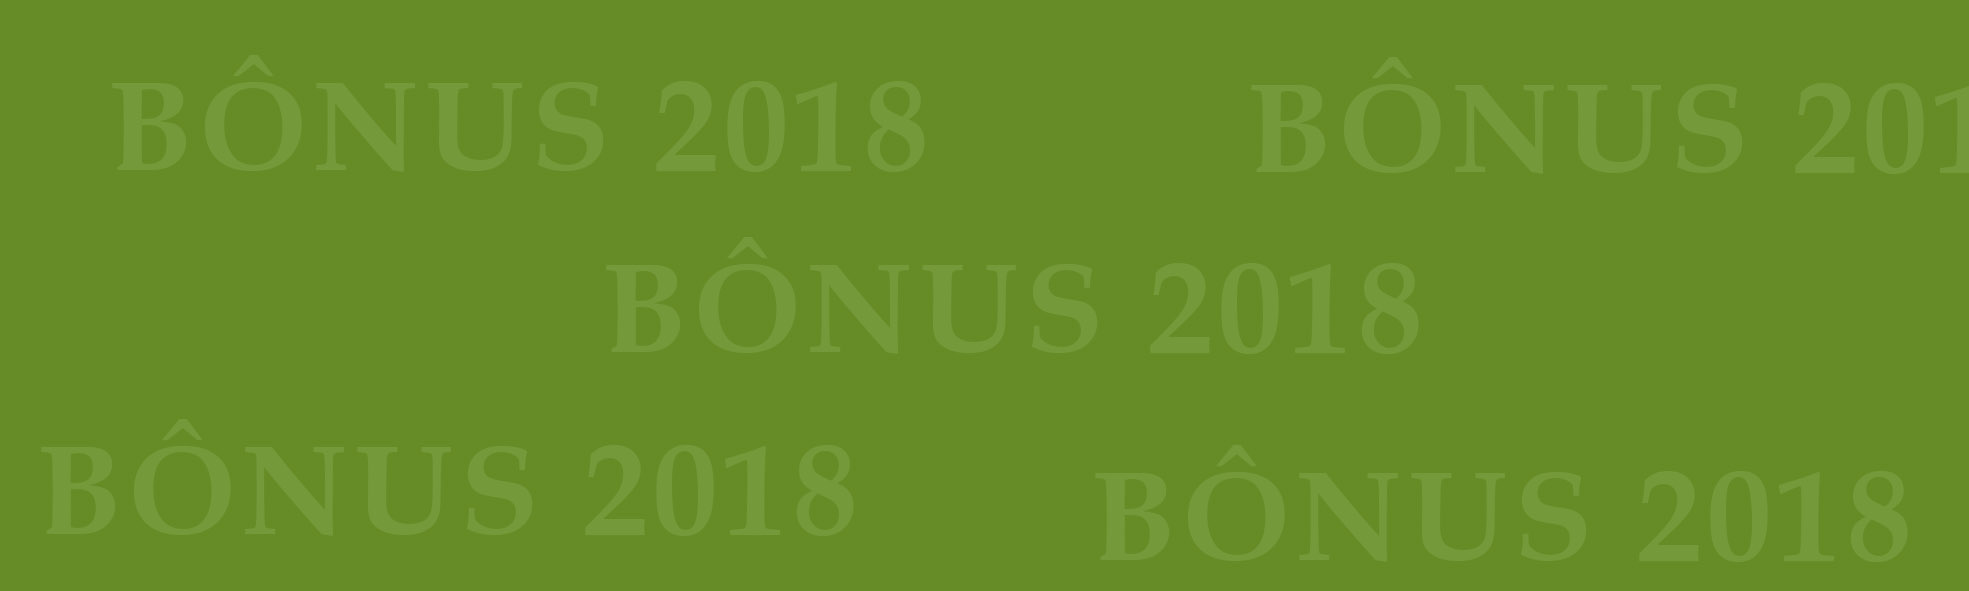 Bônus 2018: Centro divulga índices das unidades